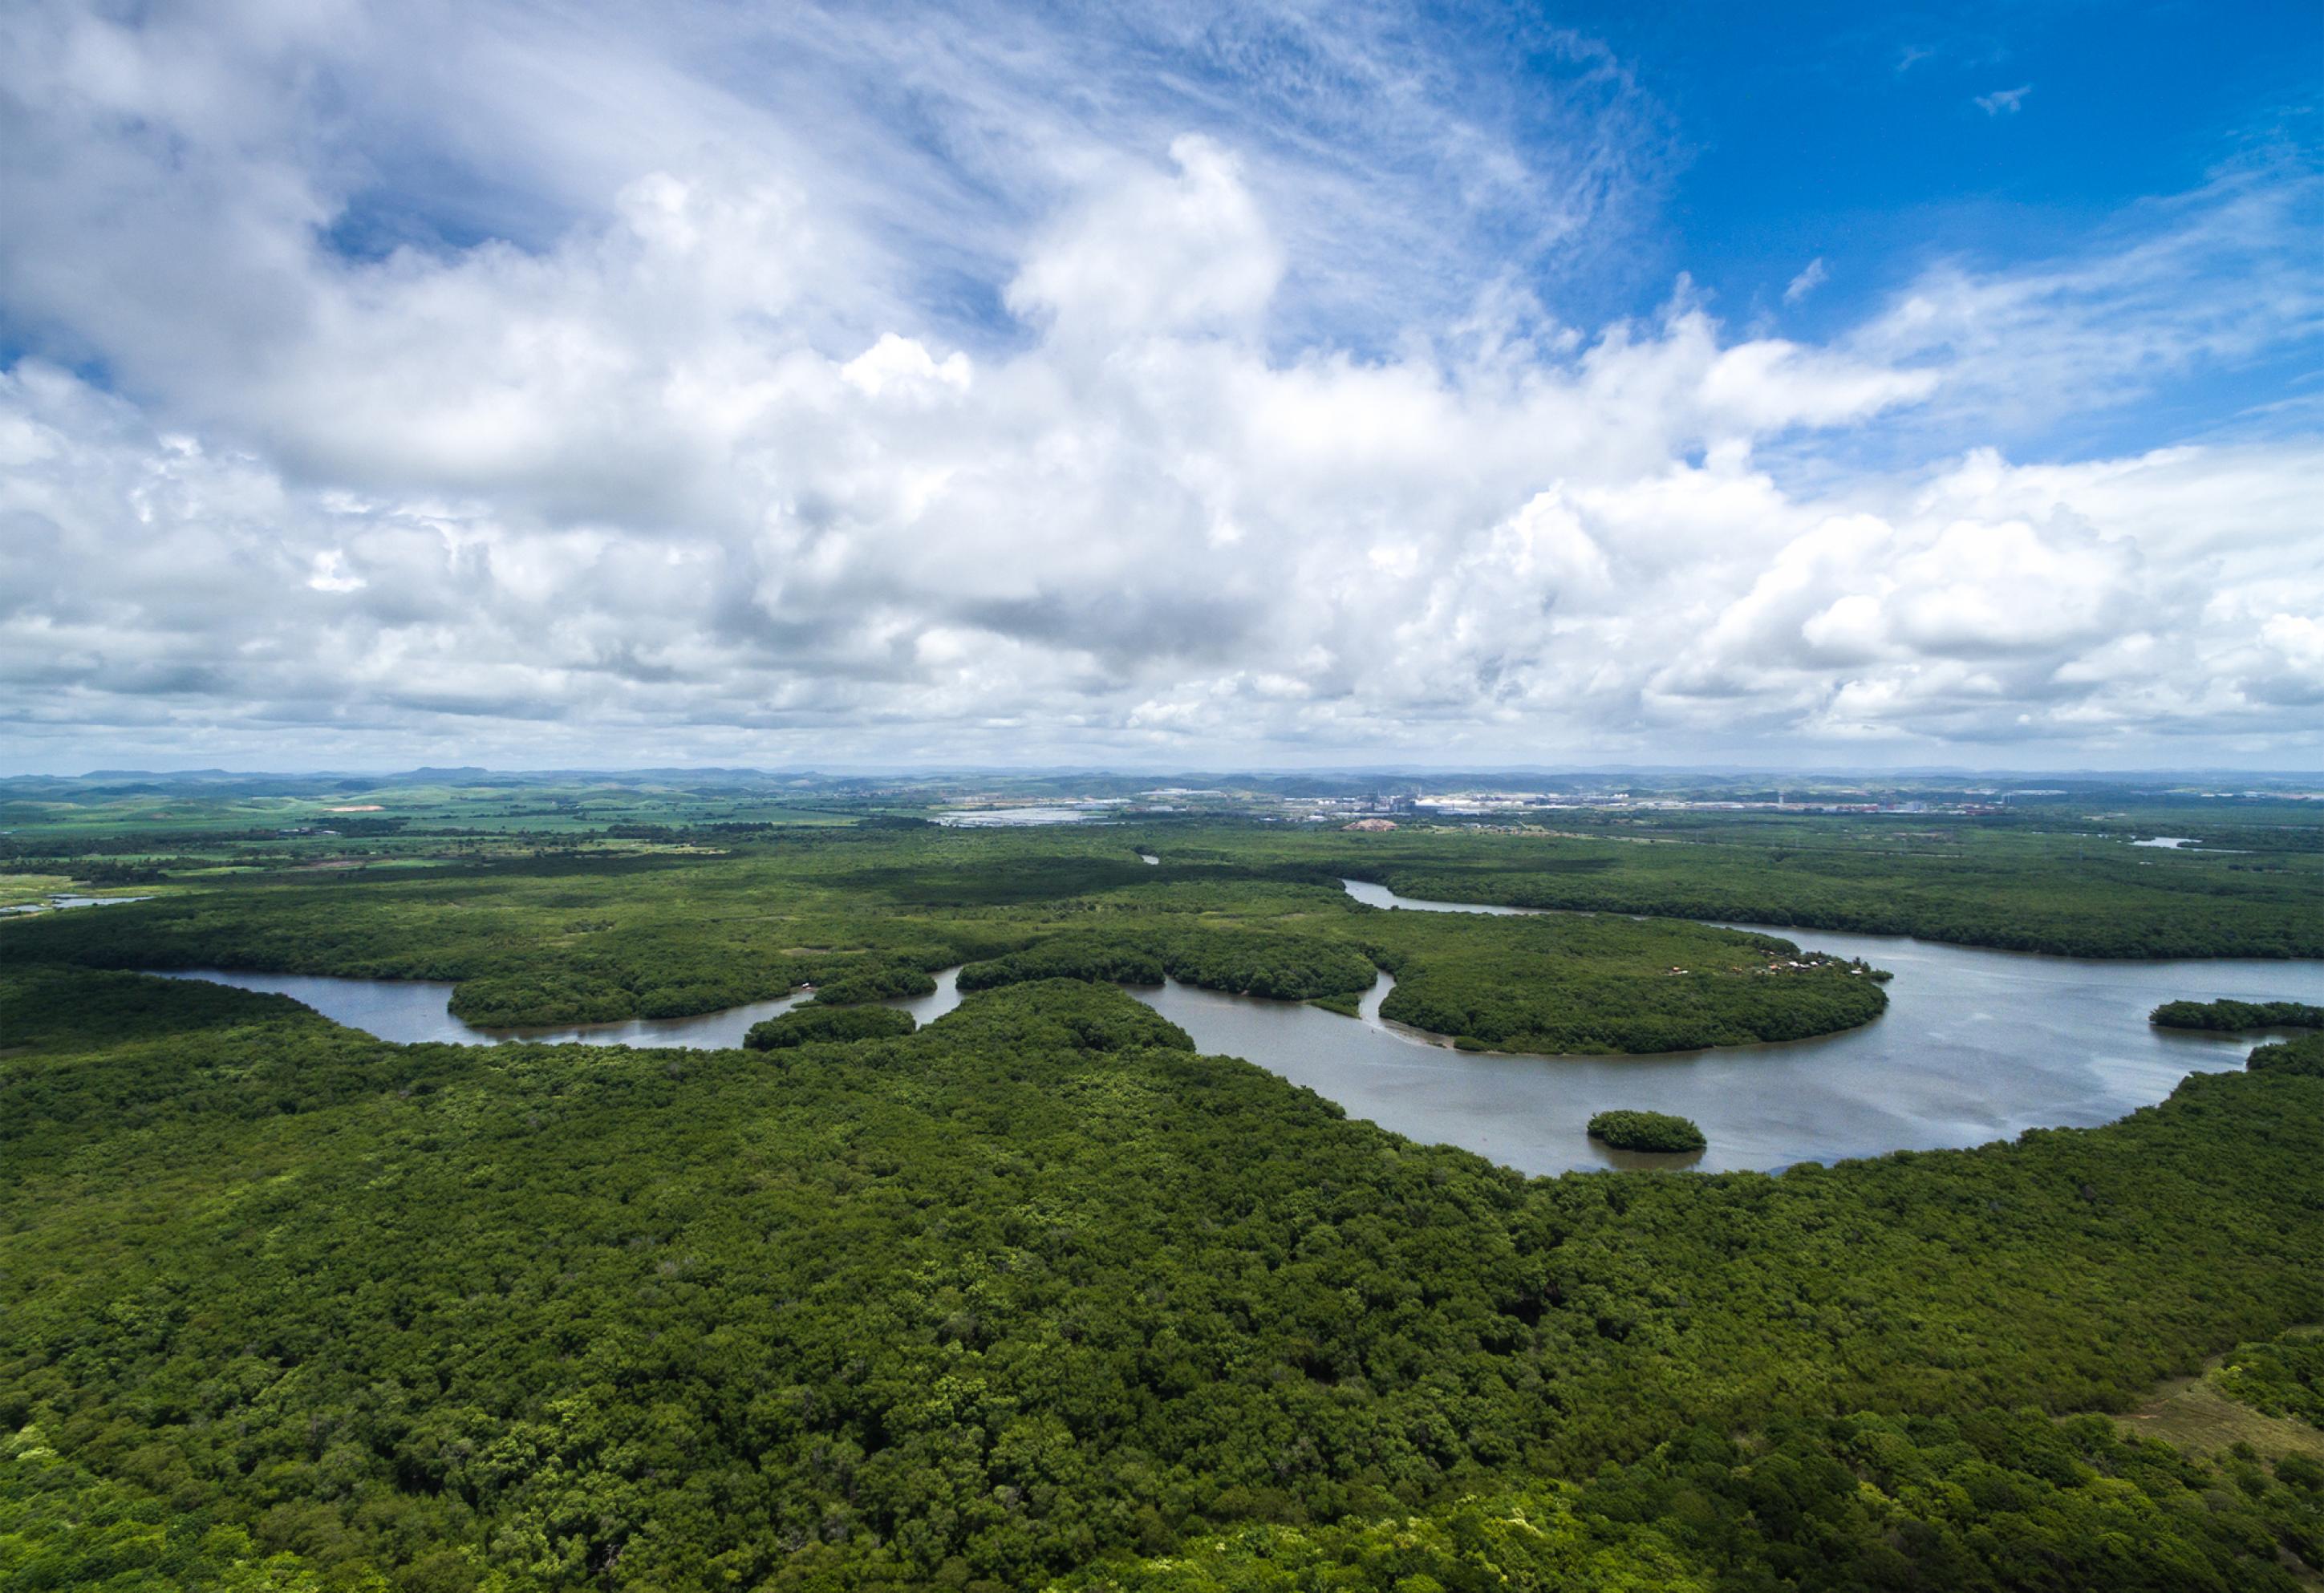 Lufbild Amazonas mit Flussschlinge und viel Wald